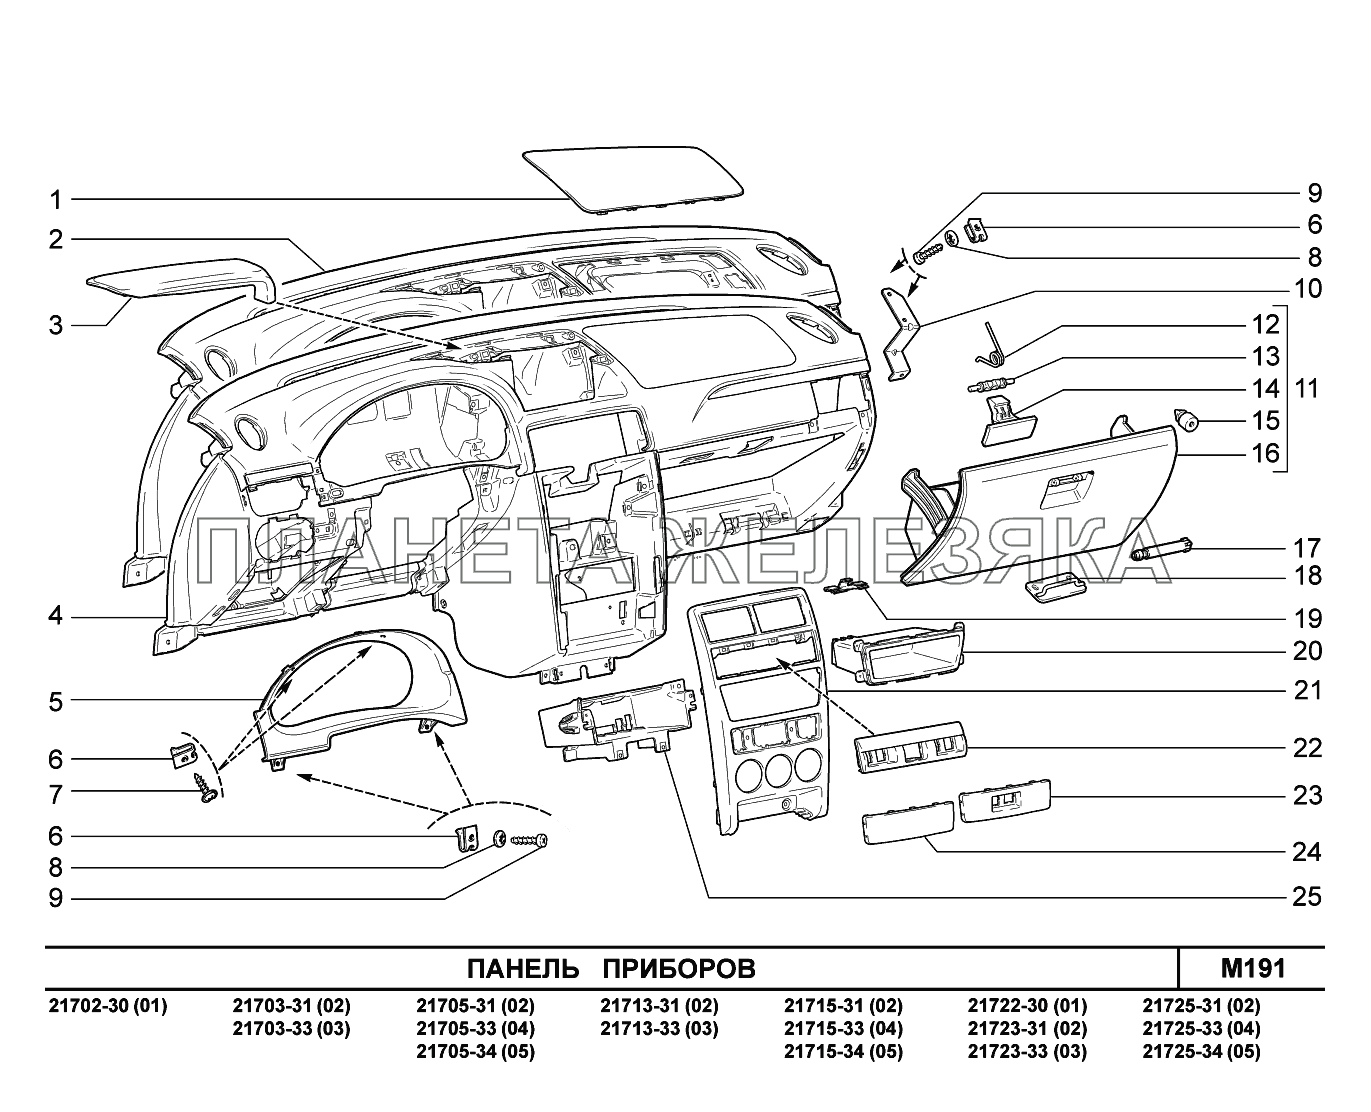 M191. Панель приборов ВАЗ-2170 